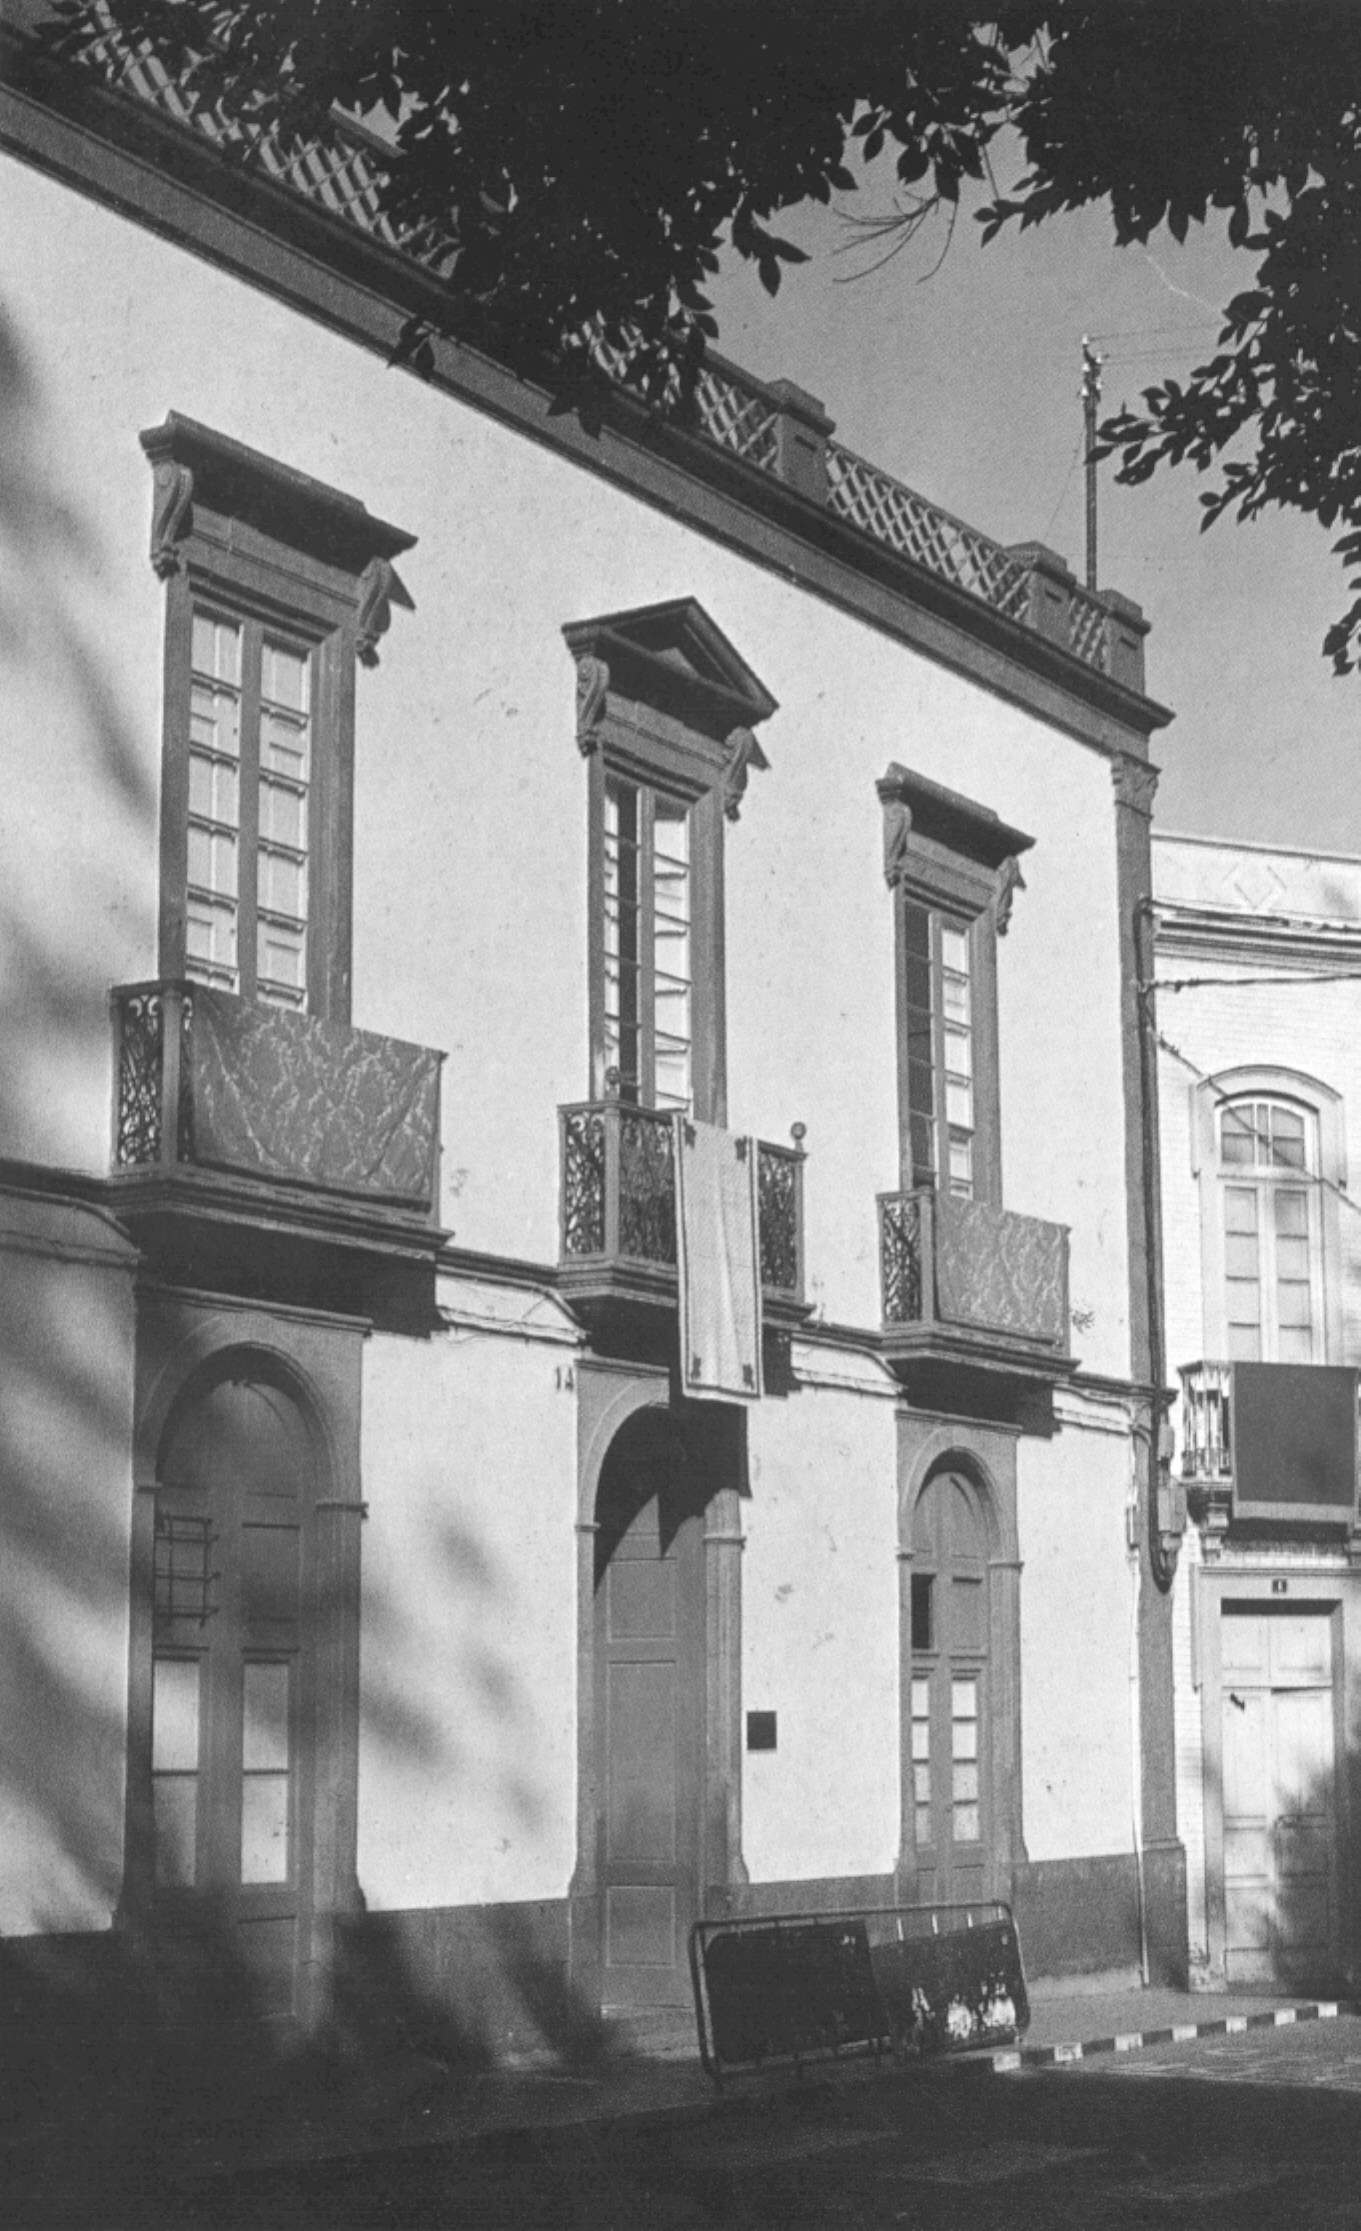 La casa de Don José Betancor y Reina, construida entre 1.863 y 1.865.
Su edificación dió lugar al trazado de la actual Plaza de Santiago.
Fue hotel a finales del siglo XIX y sirve hoy de colegio a las Siervas de Jesús Sacramentado.